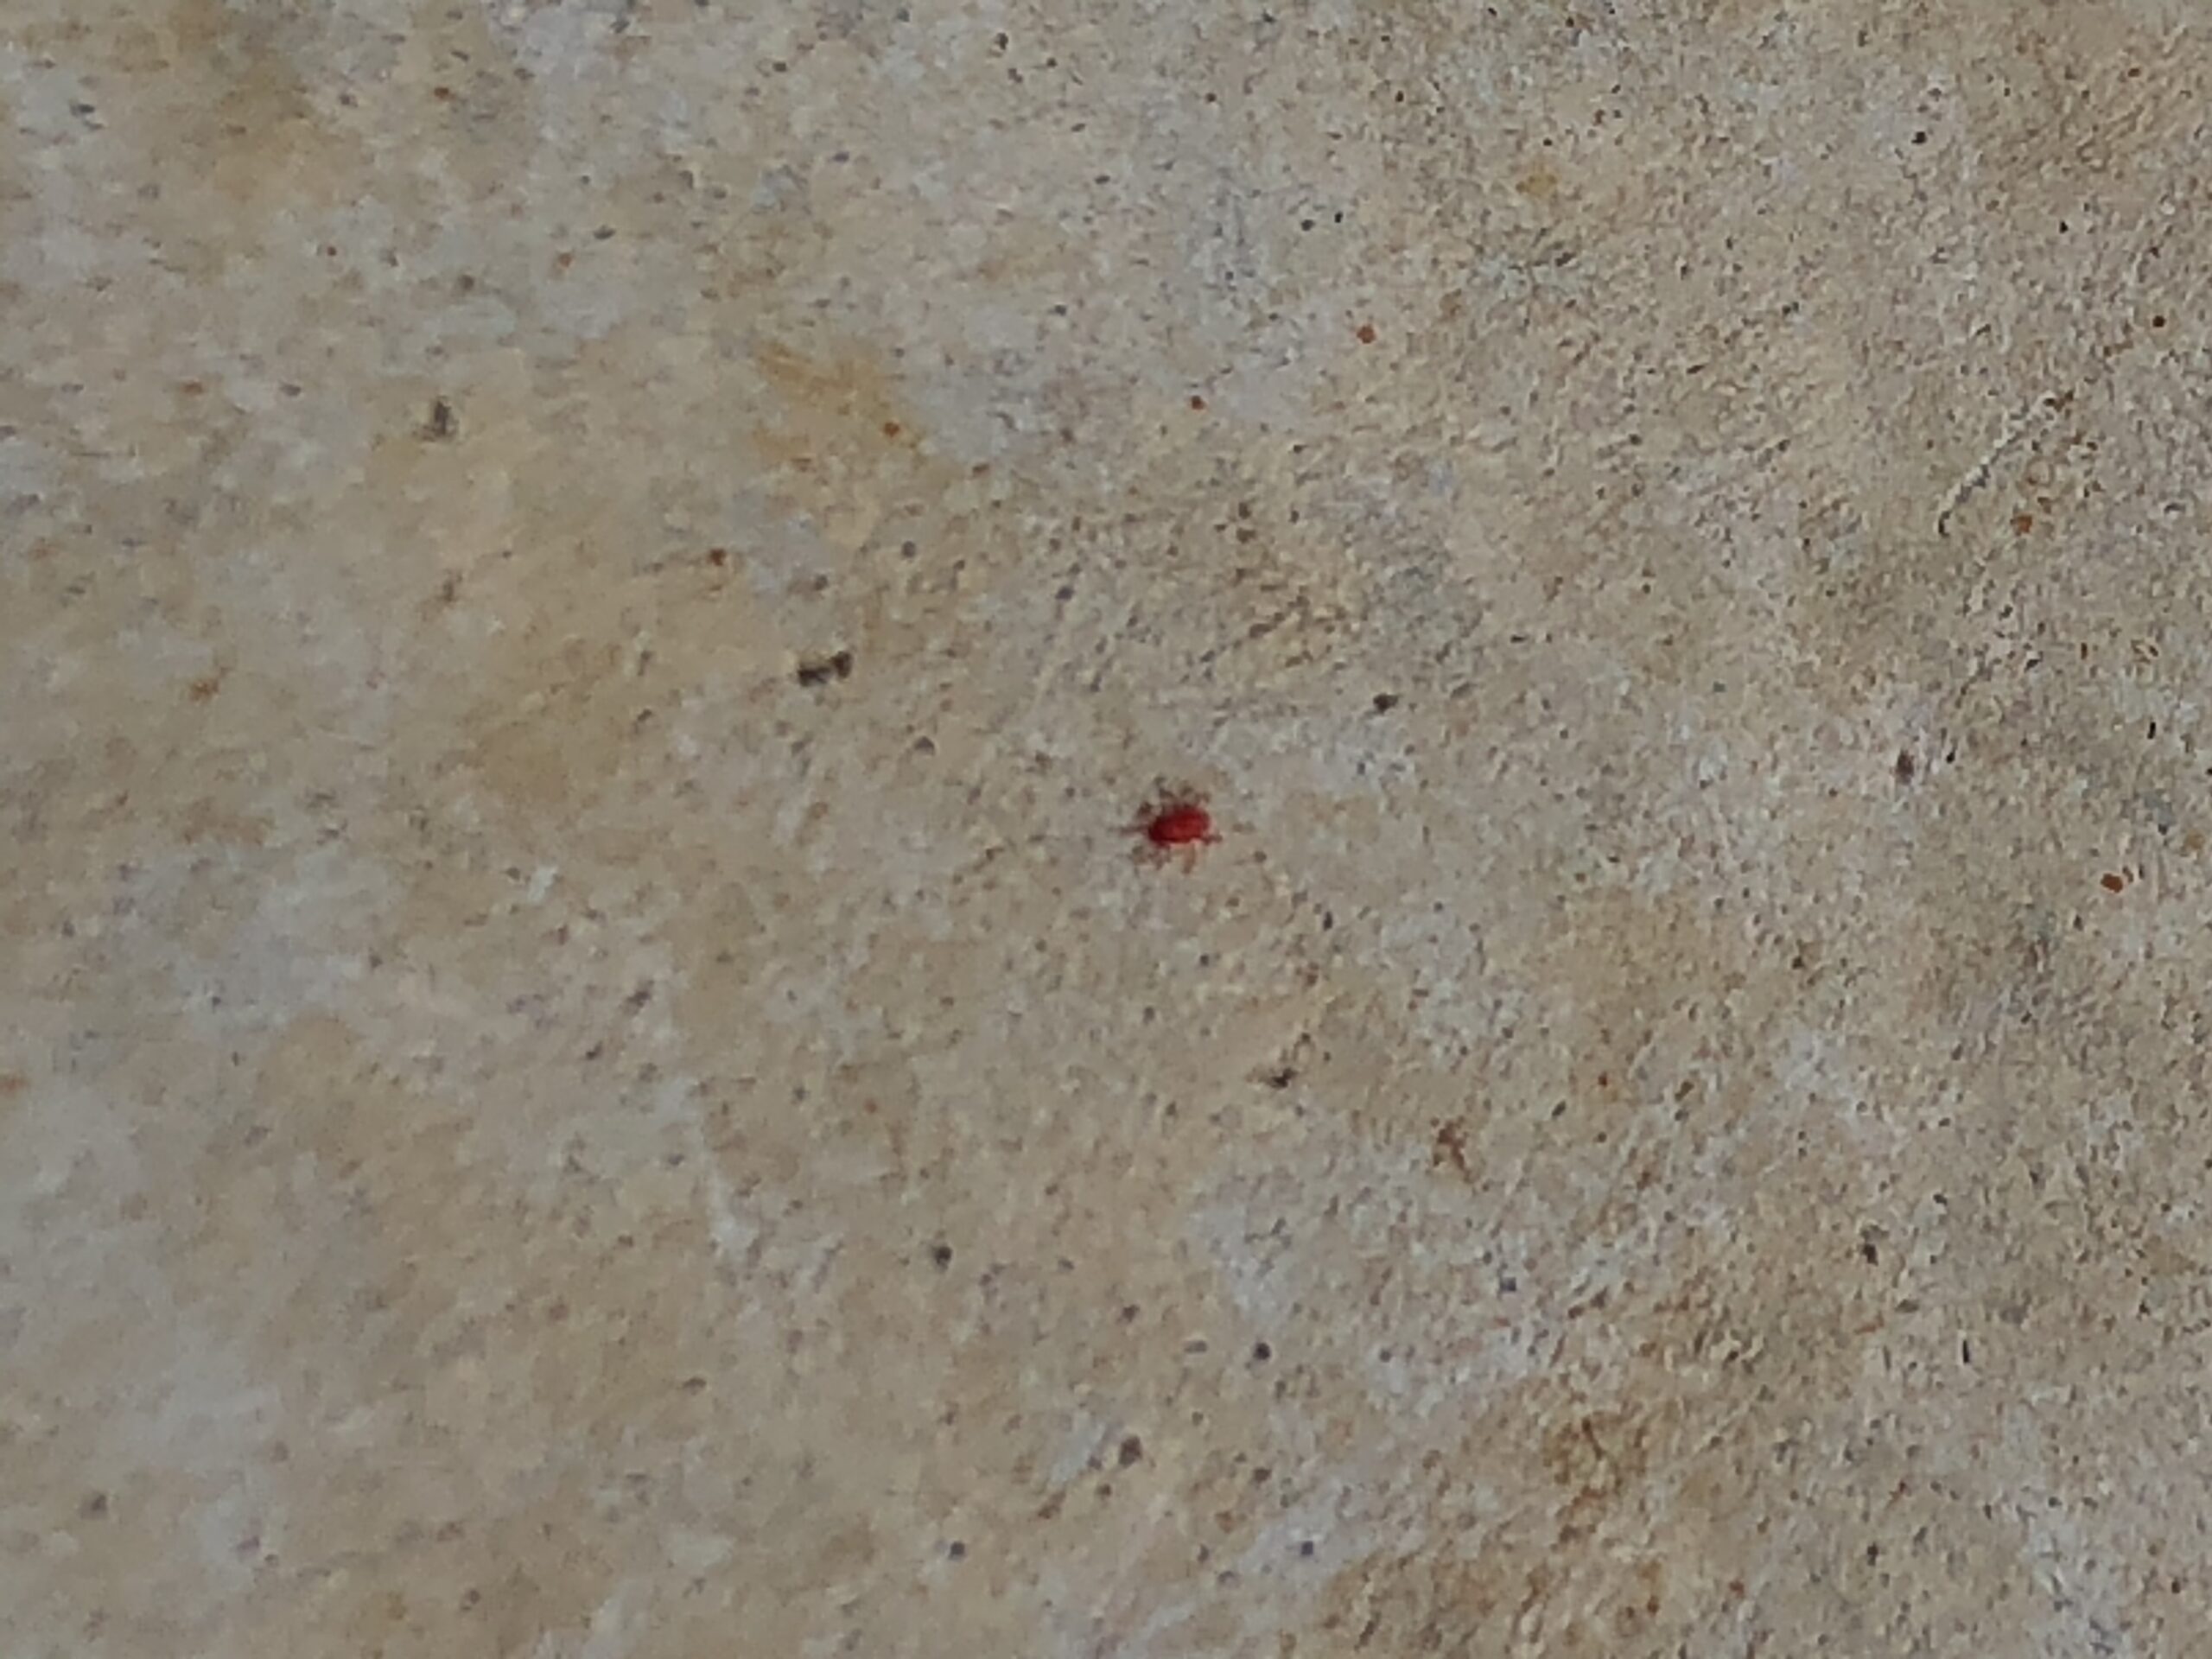 小さな赤い虫とはどんな虫 赤いダニ 刺したり咬んだりするの 千葉 東京 茨城の害虫駆除 防除 対策専門のqujolia クジョリア